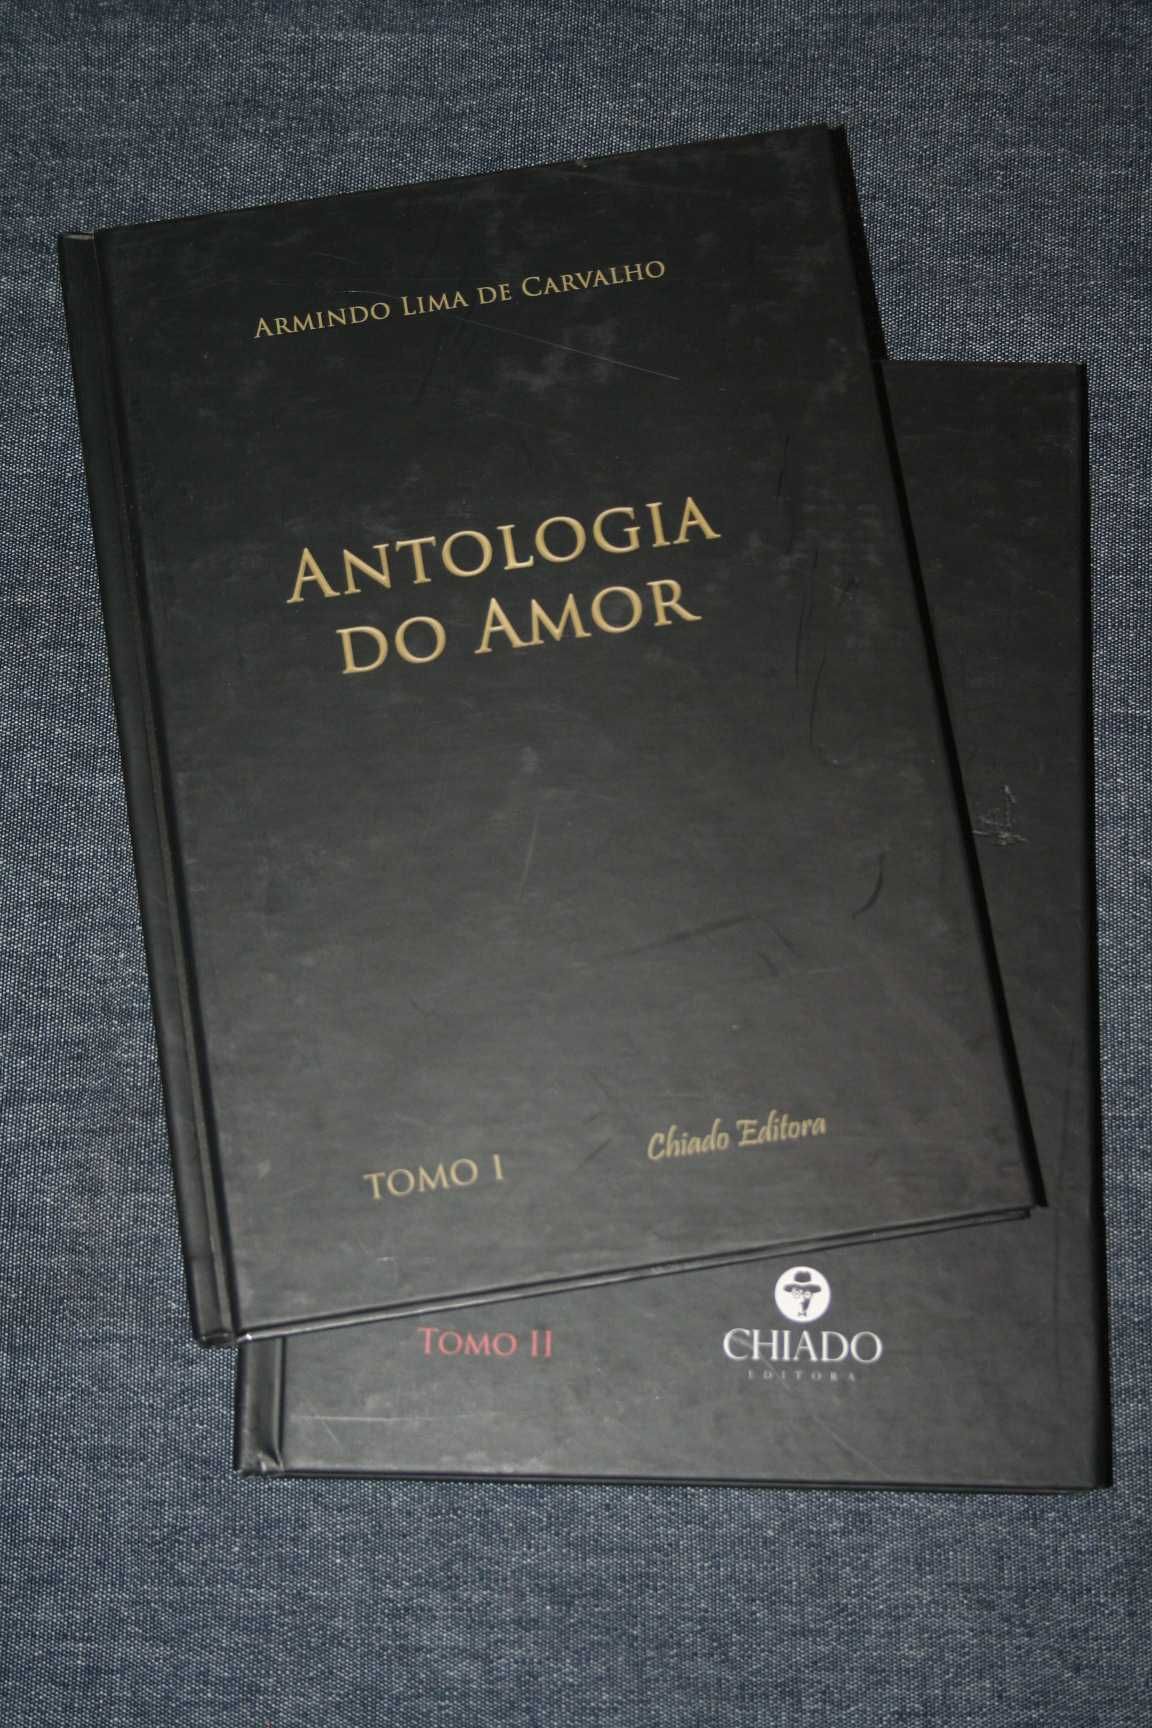 [] Antologia do Amor (2 volumes), Armindo Lima de Carvalho